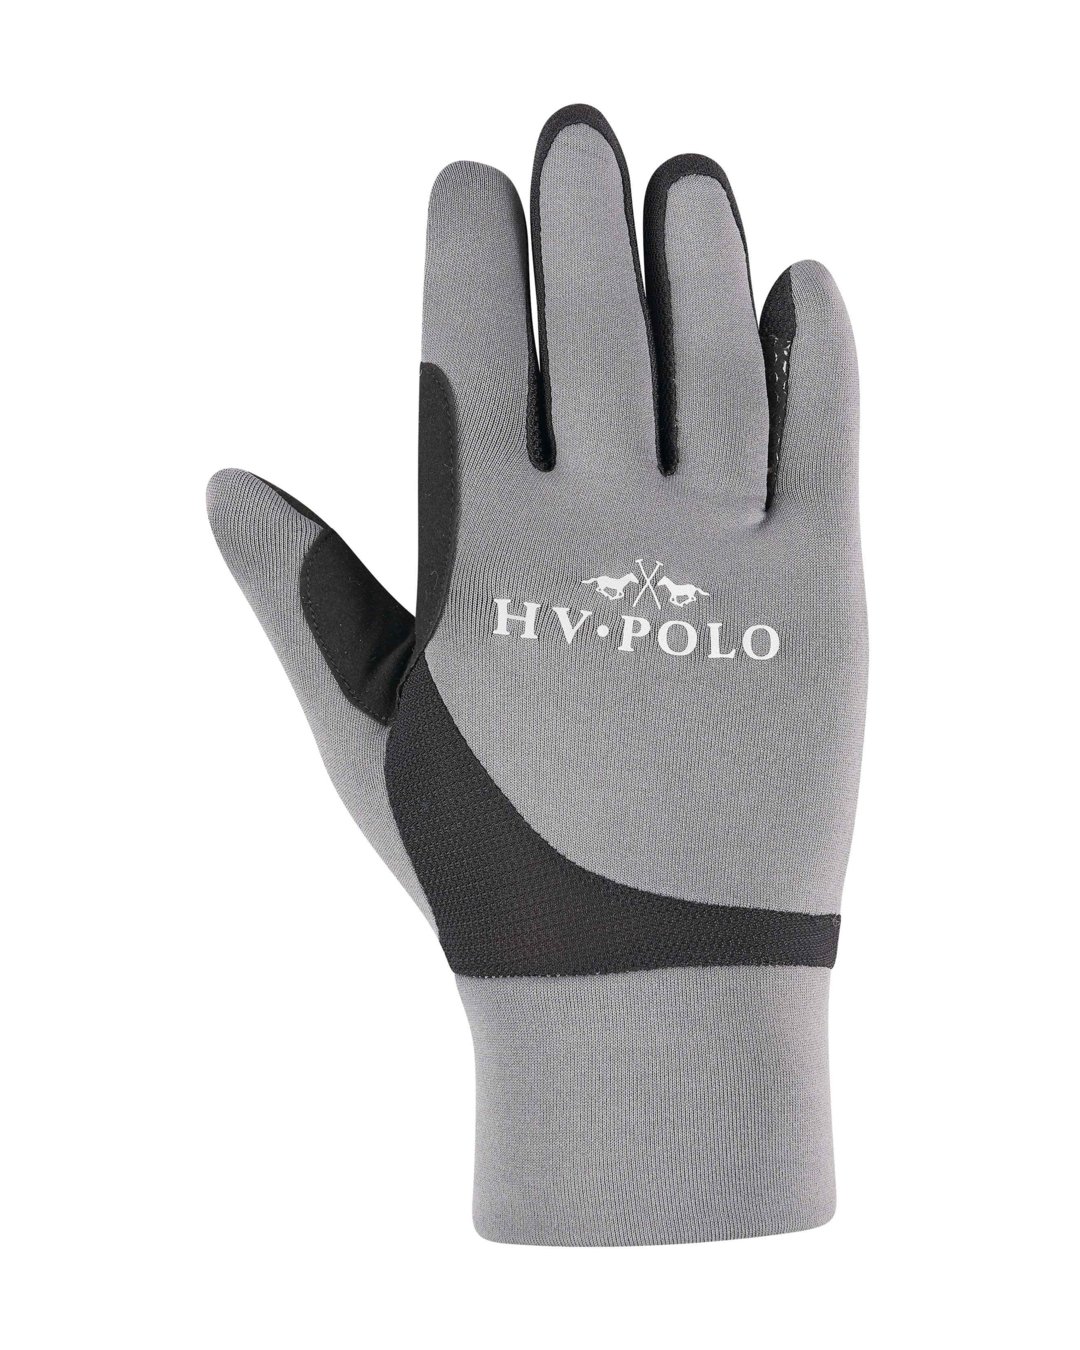 Handschuhe HVPTech mid season